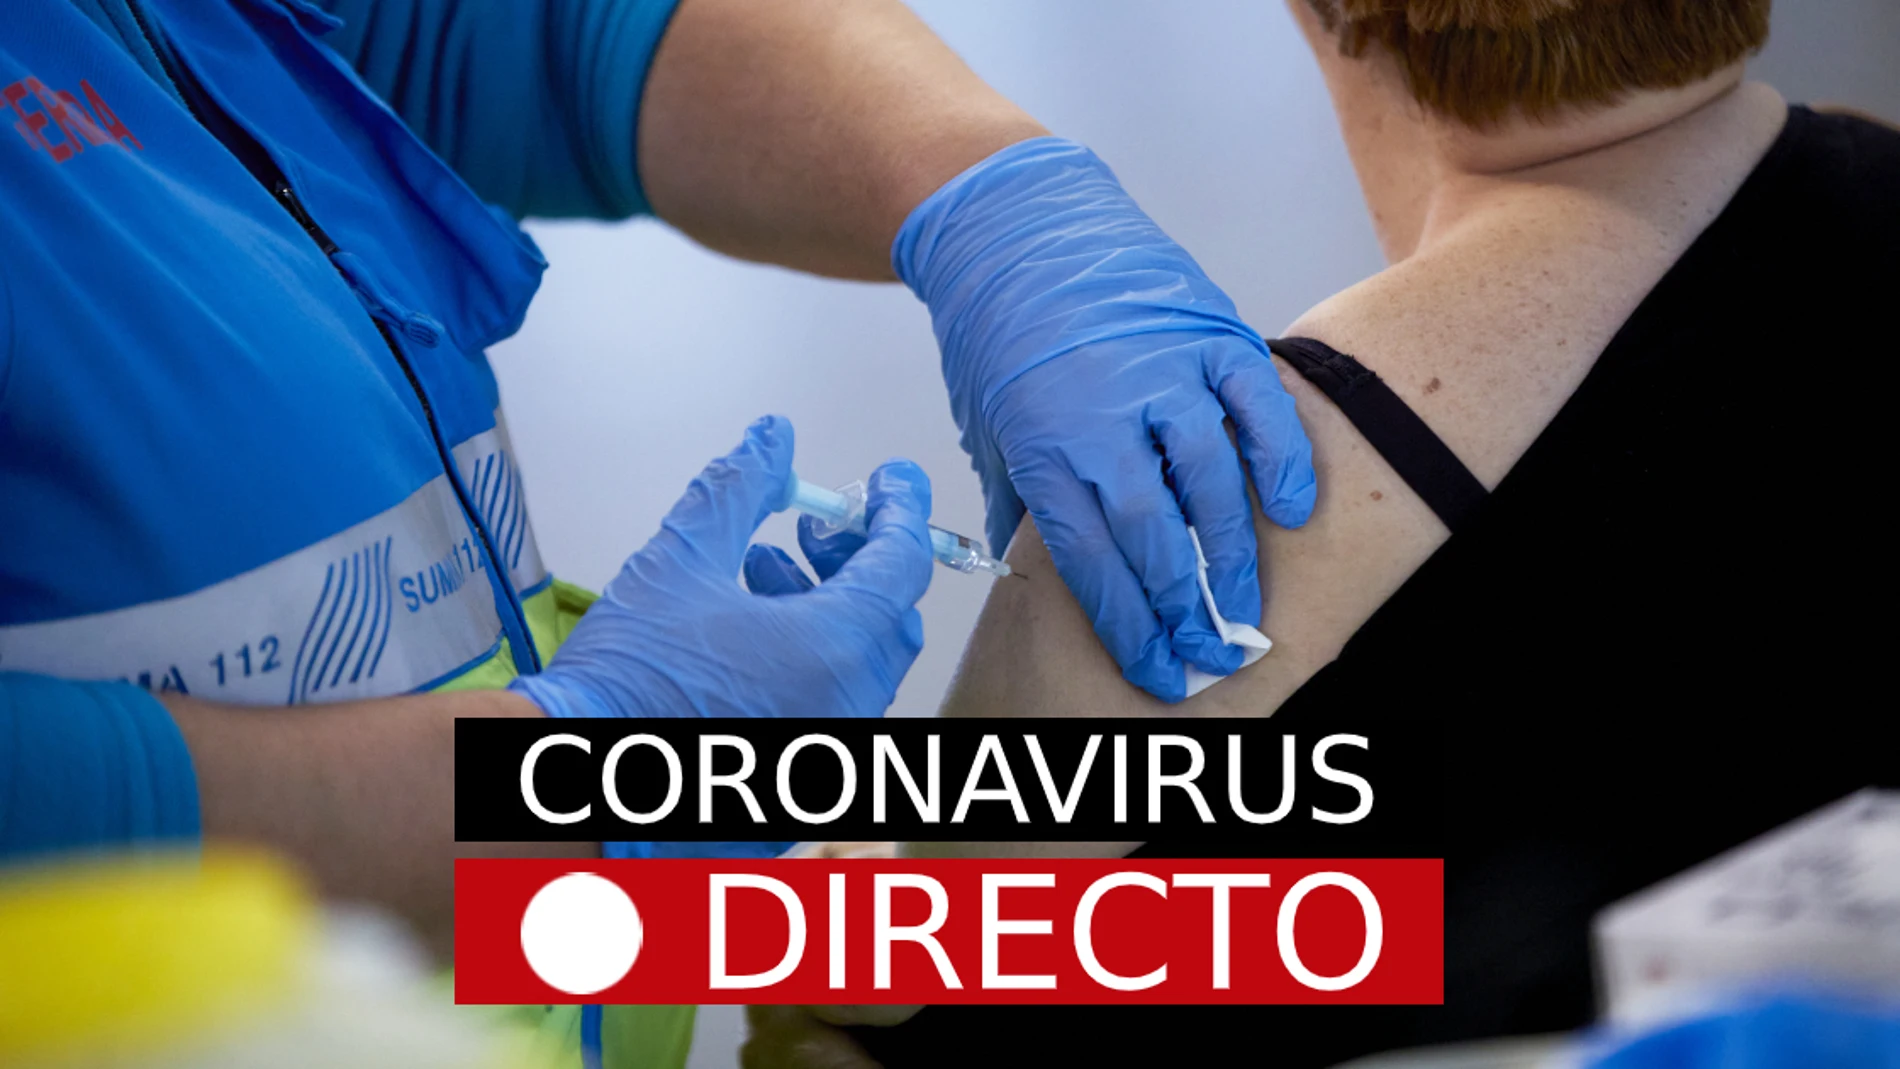 COVID-19 | Campaña de vacunación por coronavirus en España, nuevas restricciones y medidas, en directo